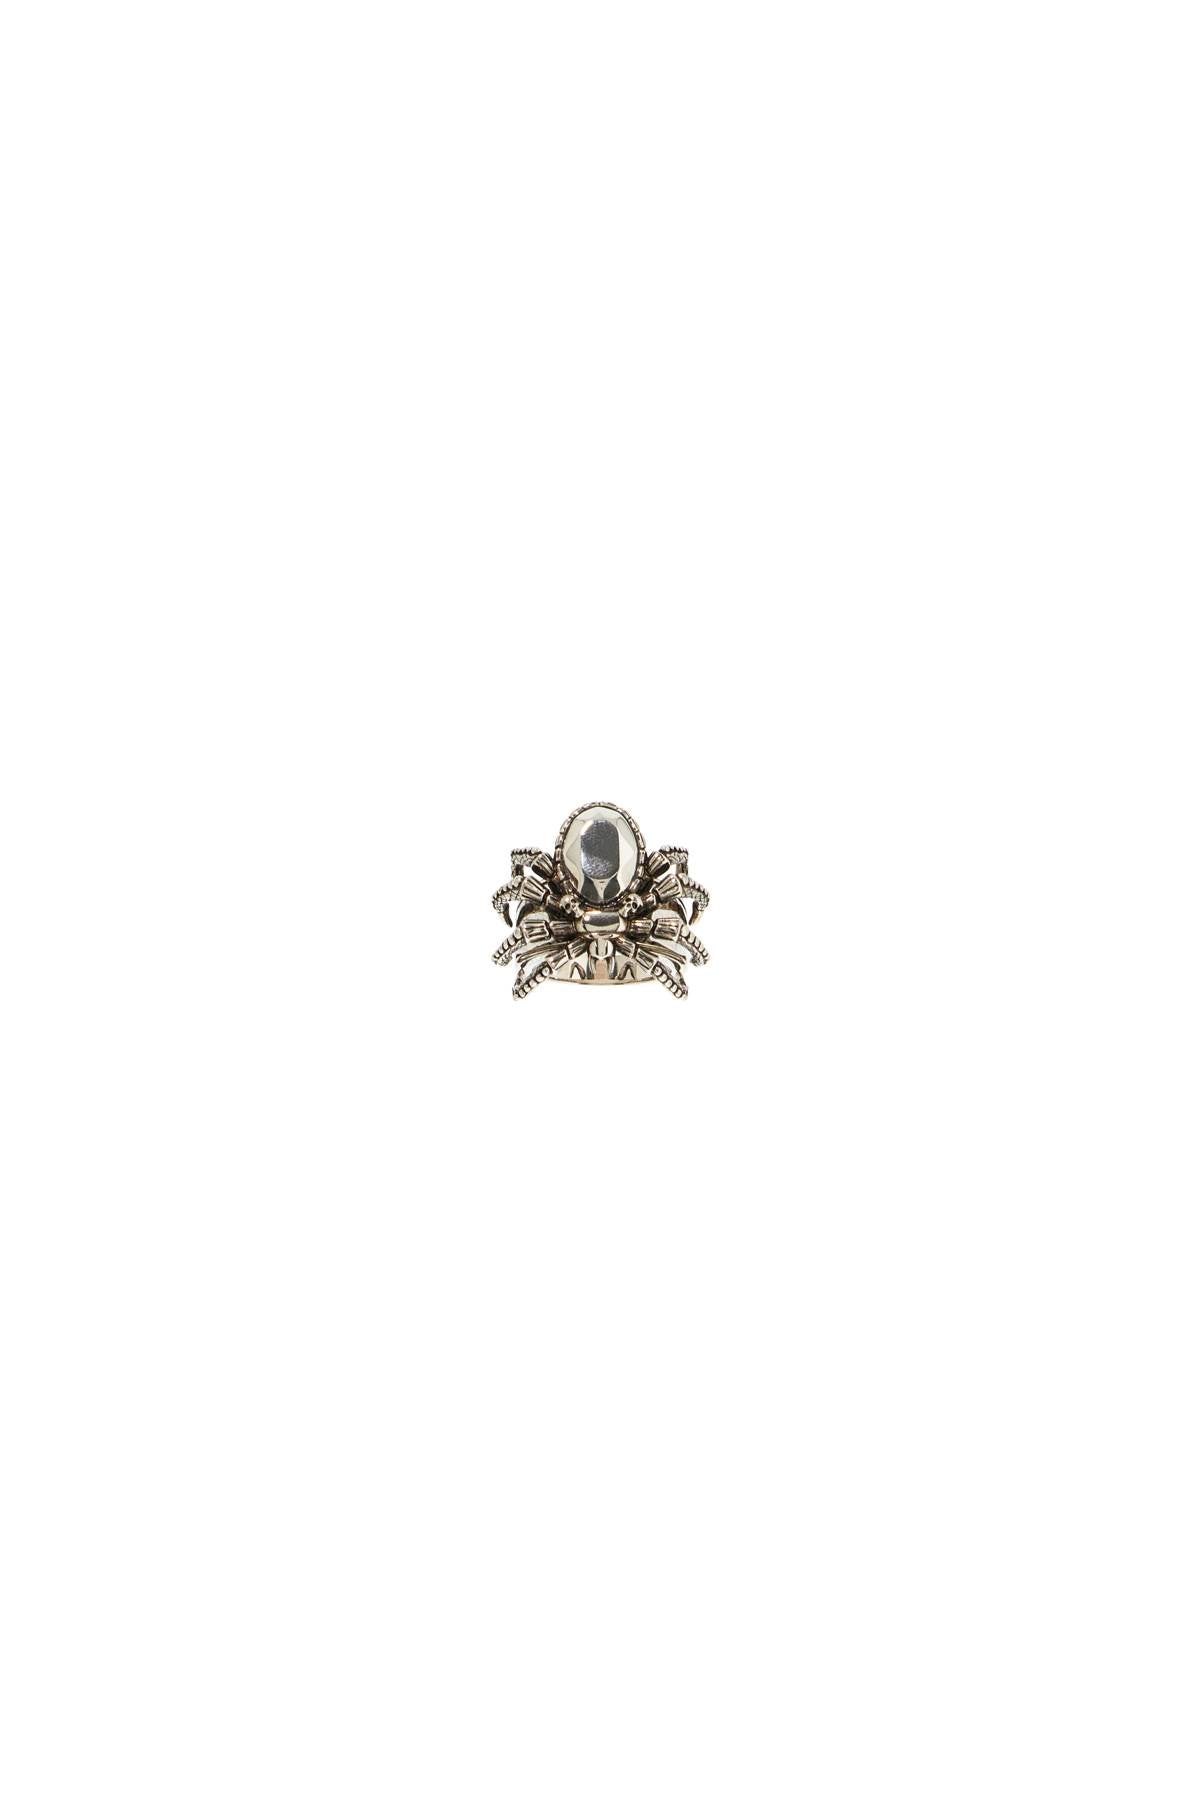 Alexander Mcqueen Antique Silver Spider Ring In